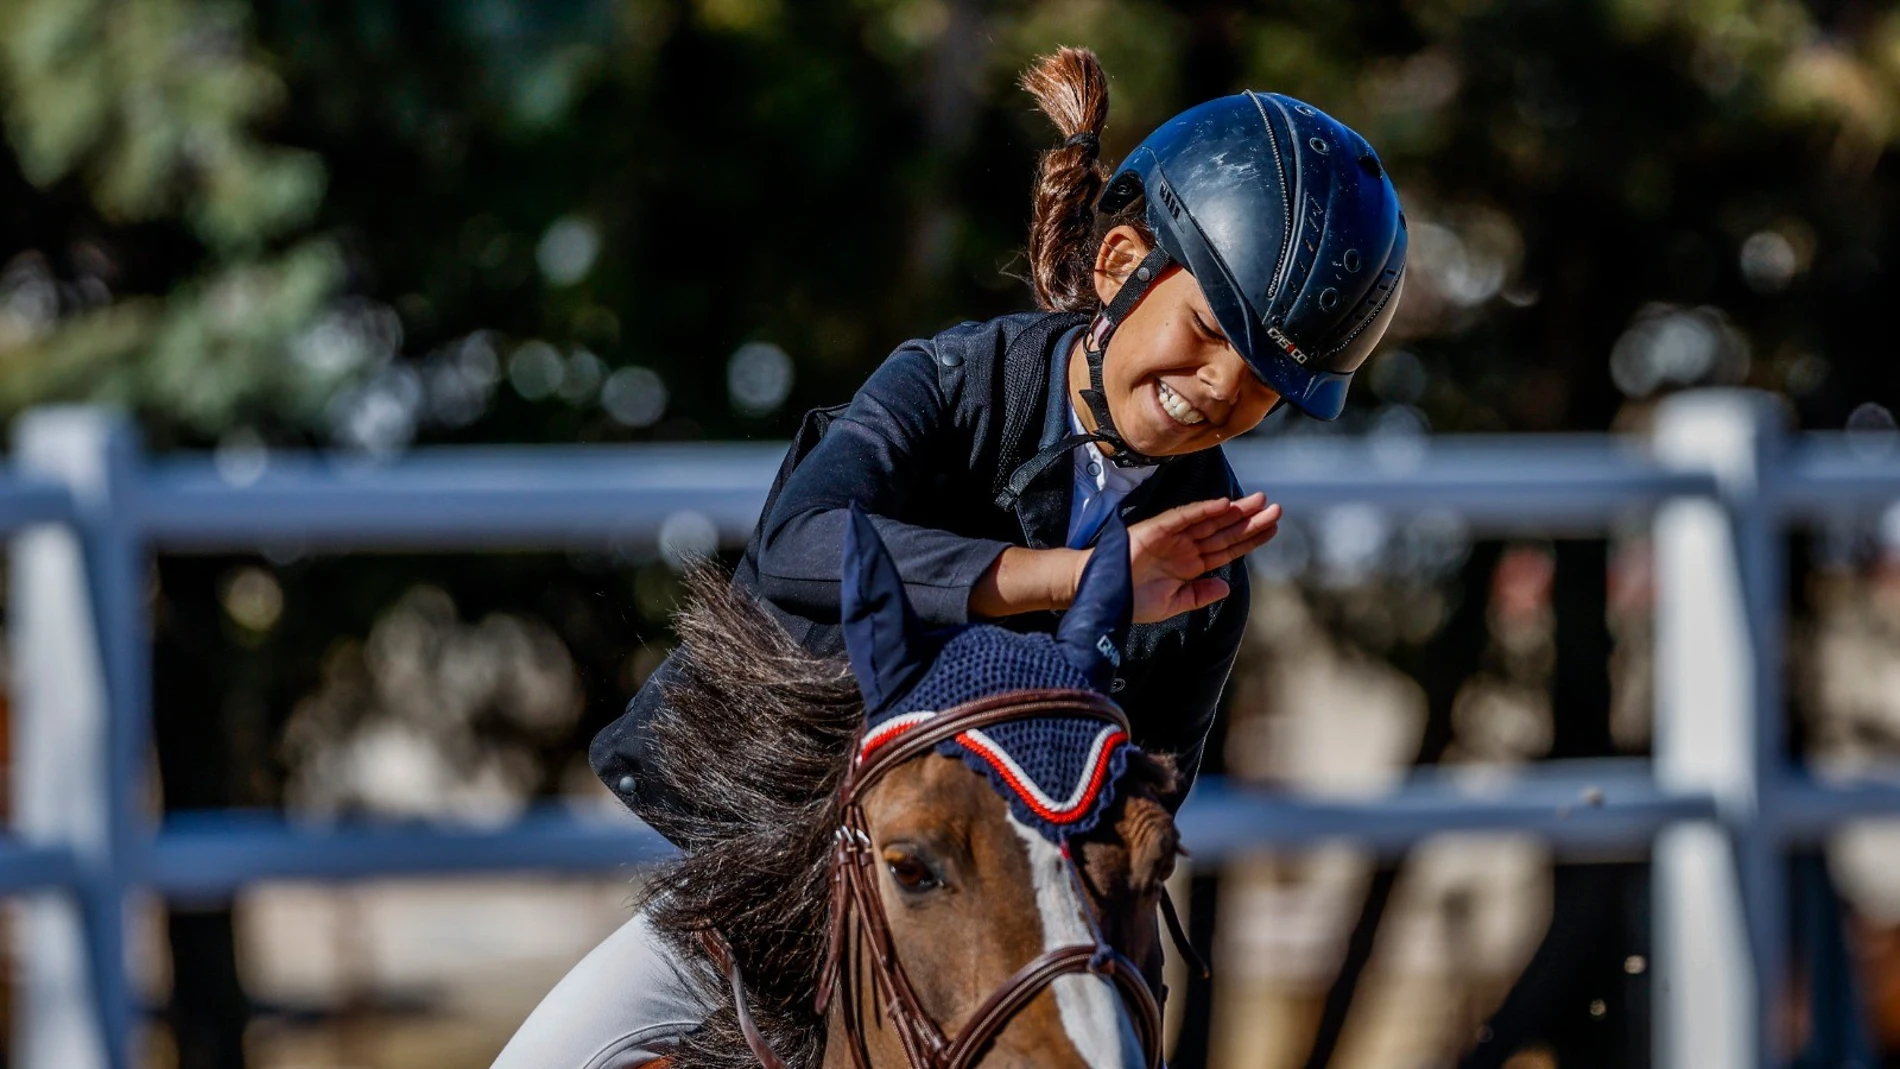 La equitación puede ser una actividad extraescolar más